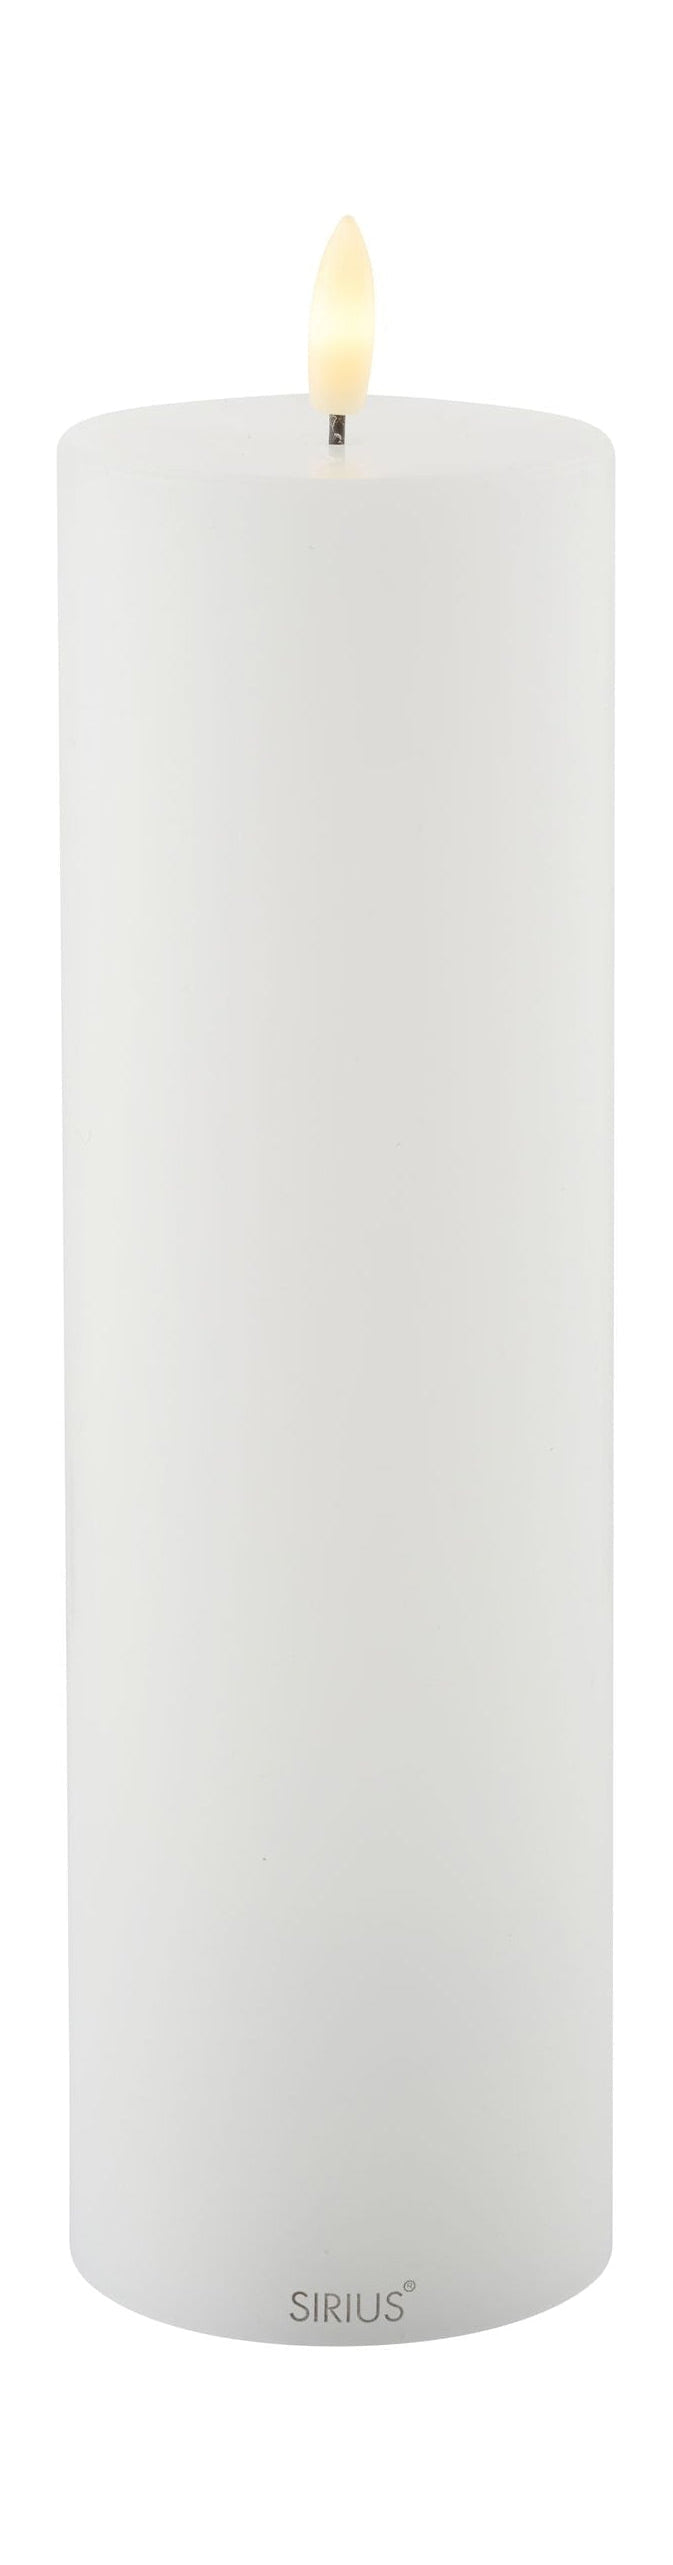 Sirius Sille oppladbar LED -stearinlyshvit, Ø7,5X H25 cm